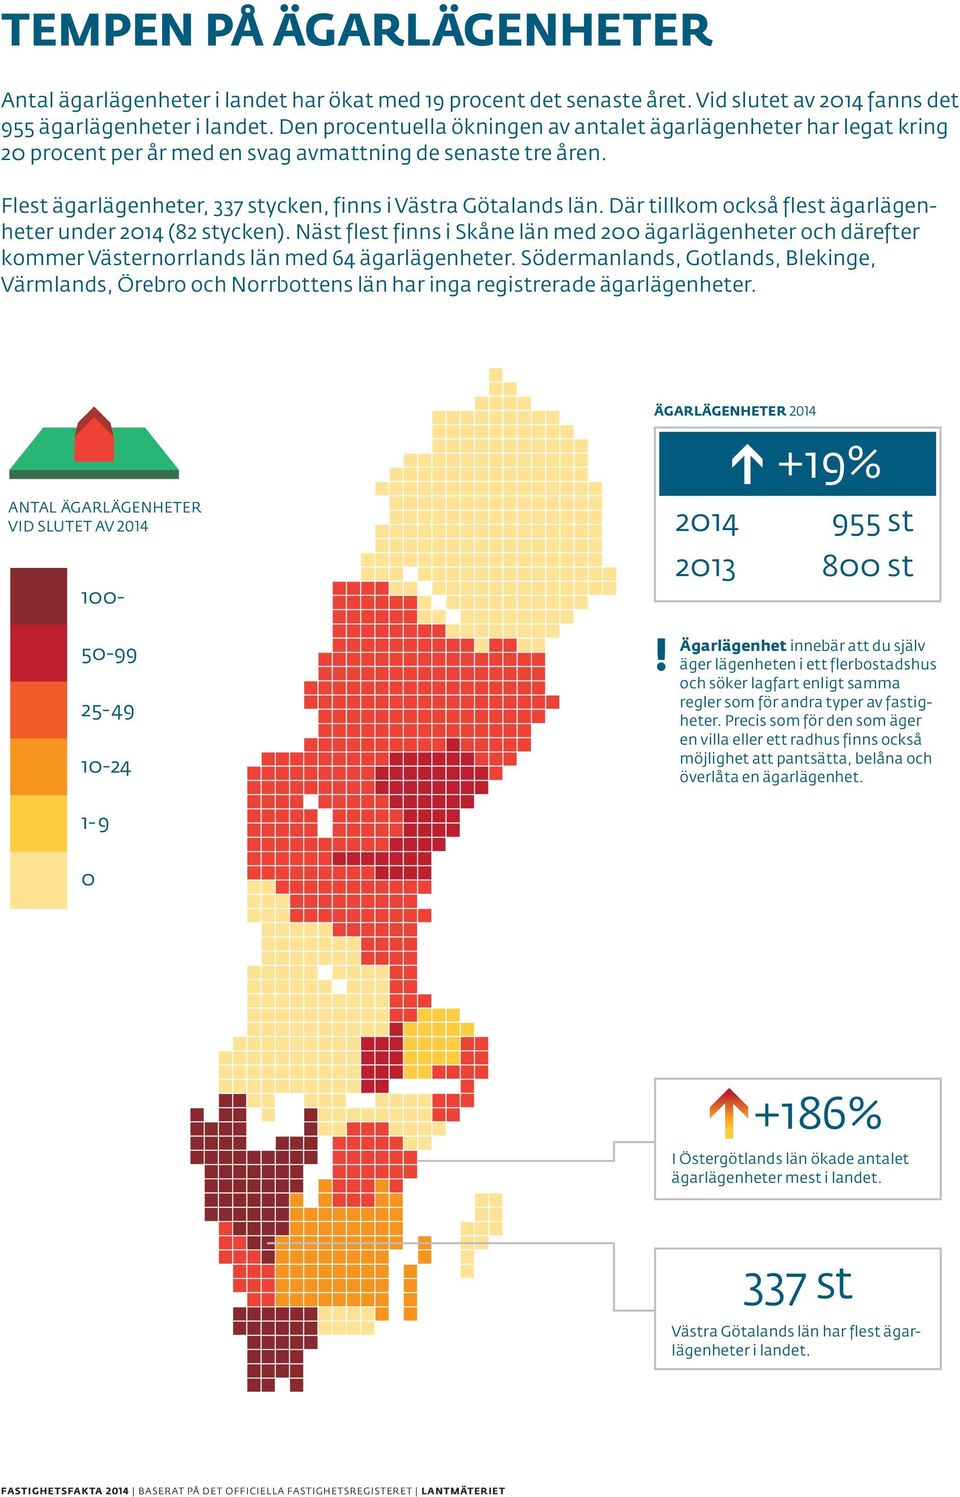 Antal ägarlägenheter Flest ägarlägenheter, 337 stycken, finns i Västra Götalands län. Där tillkom också flest ägarlägenheter av 2014 under 2014 (82 stycken).